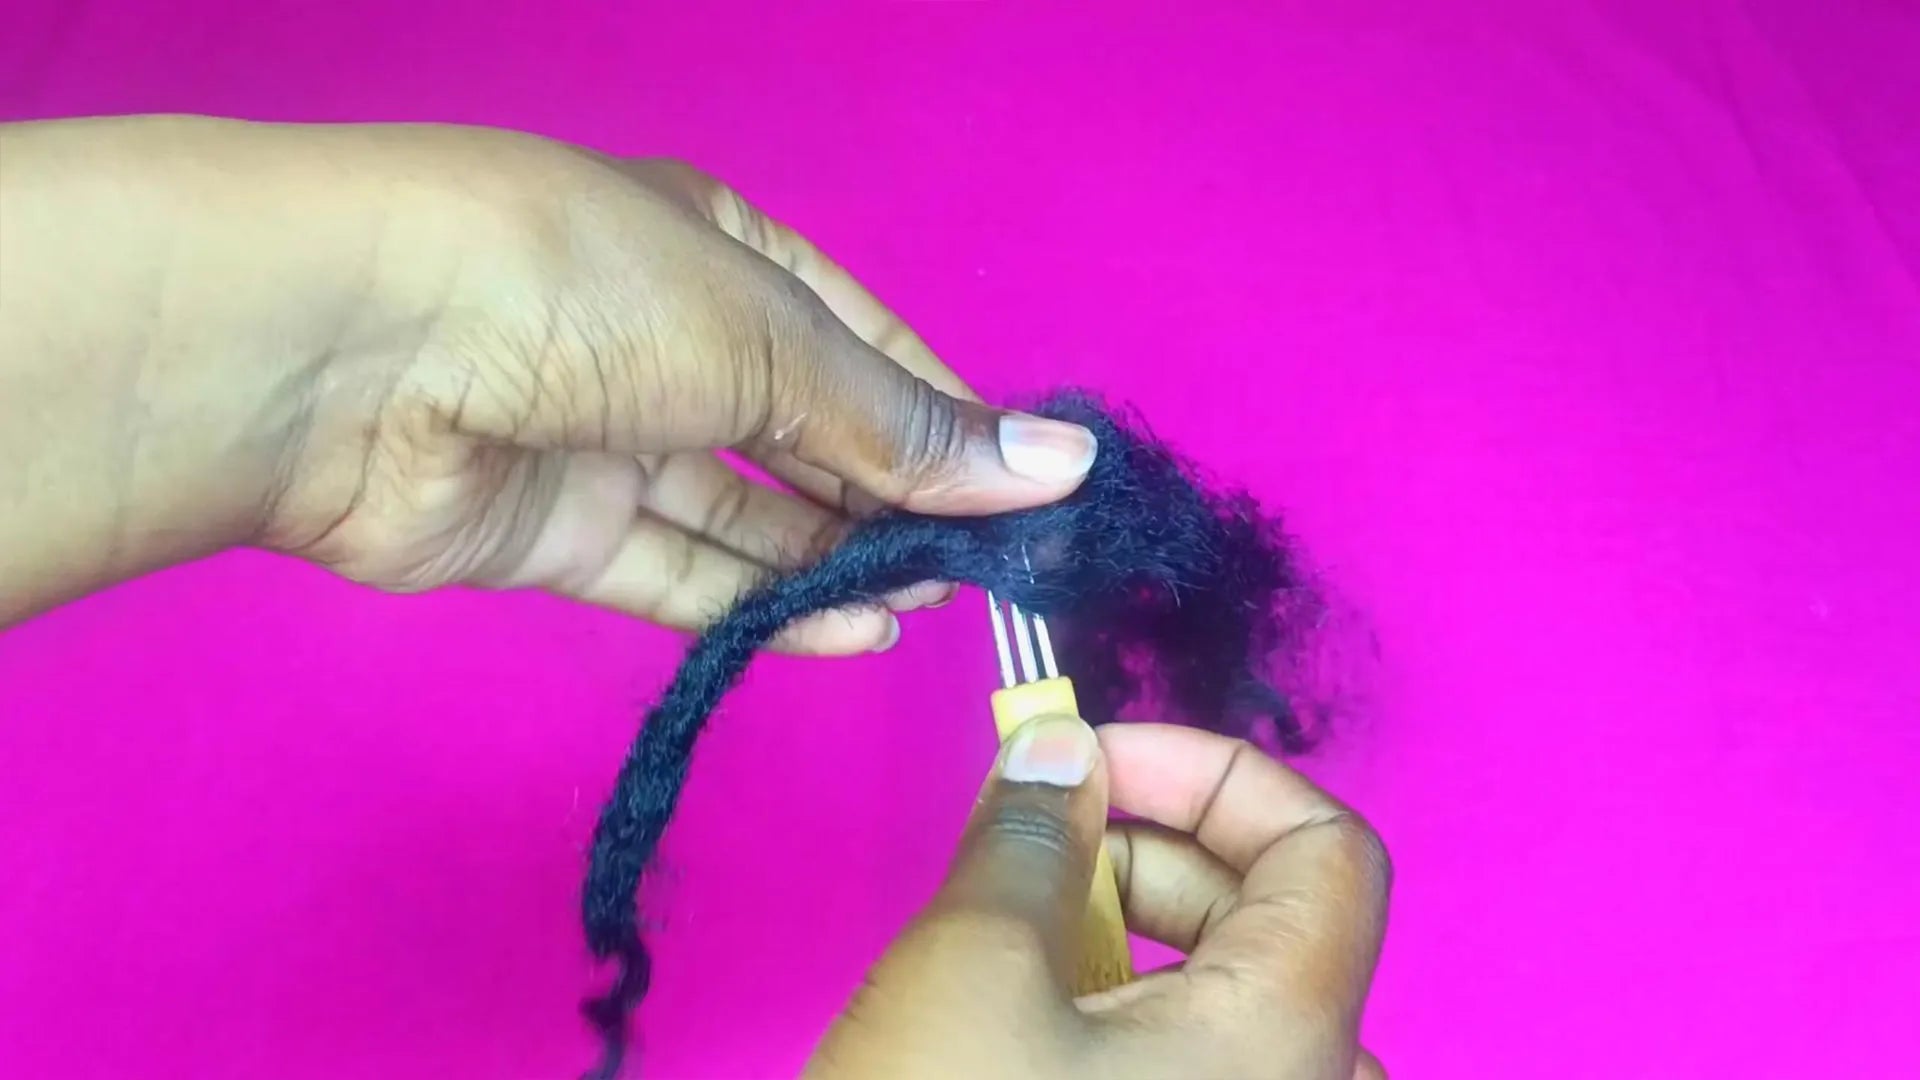 Crocheter les mèches : Insérez le crochet dans la mèche de cheveux, accrochez une petite quantité de cheveux et tirez doucement le crochet pour enrouler les cheveux. En même temps, tordez les cheveux pour commencer à former les Locs. Continuez à répéter ce processus jusqu'à ce que l'ensemble du faisceau de cheveux soit tissé en boucles serrées, y compris en formant l'extrémité de la queue bouclée.